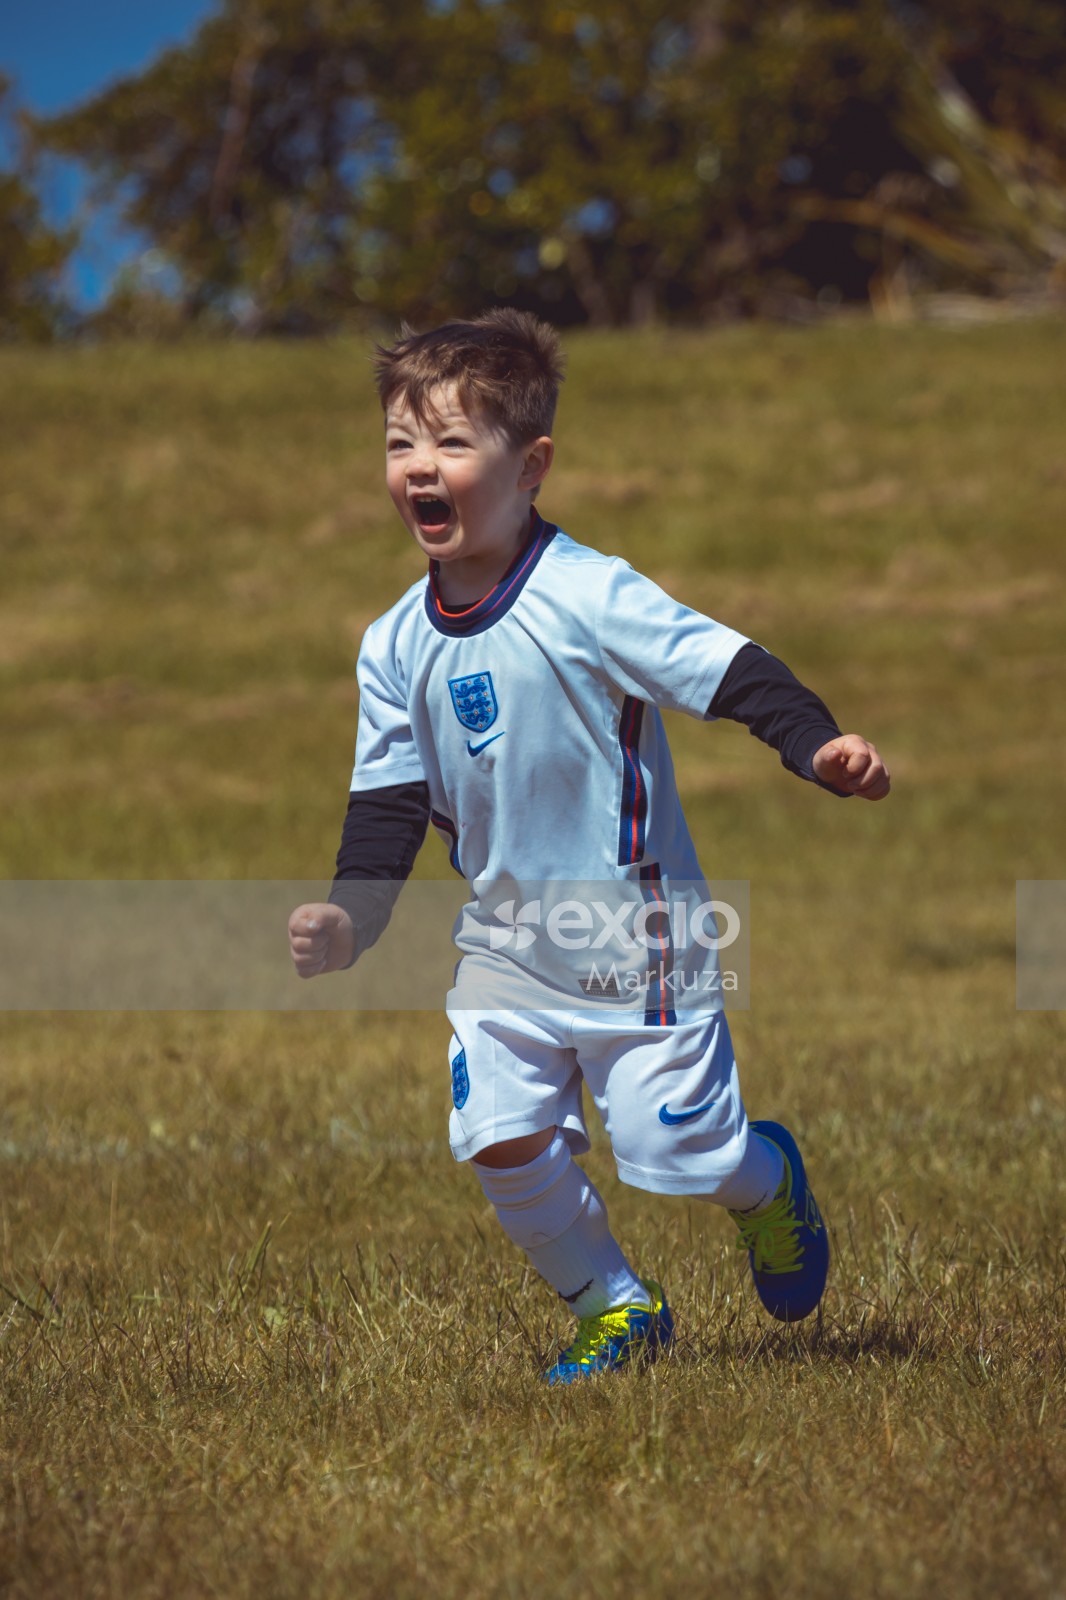 Boy wearing England kit running - Little Dribblers